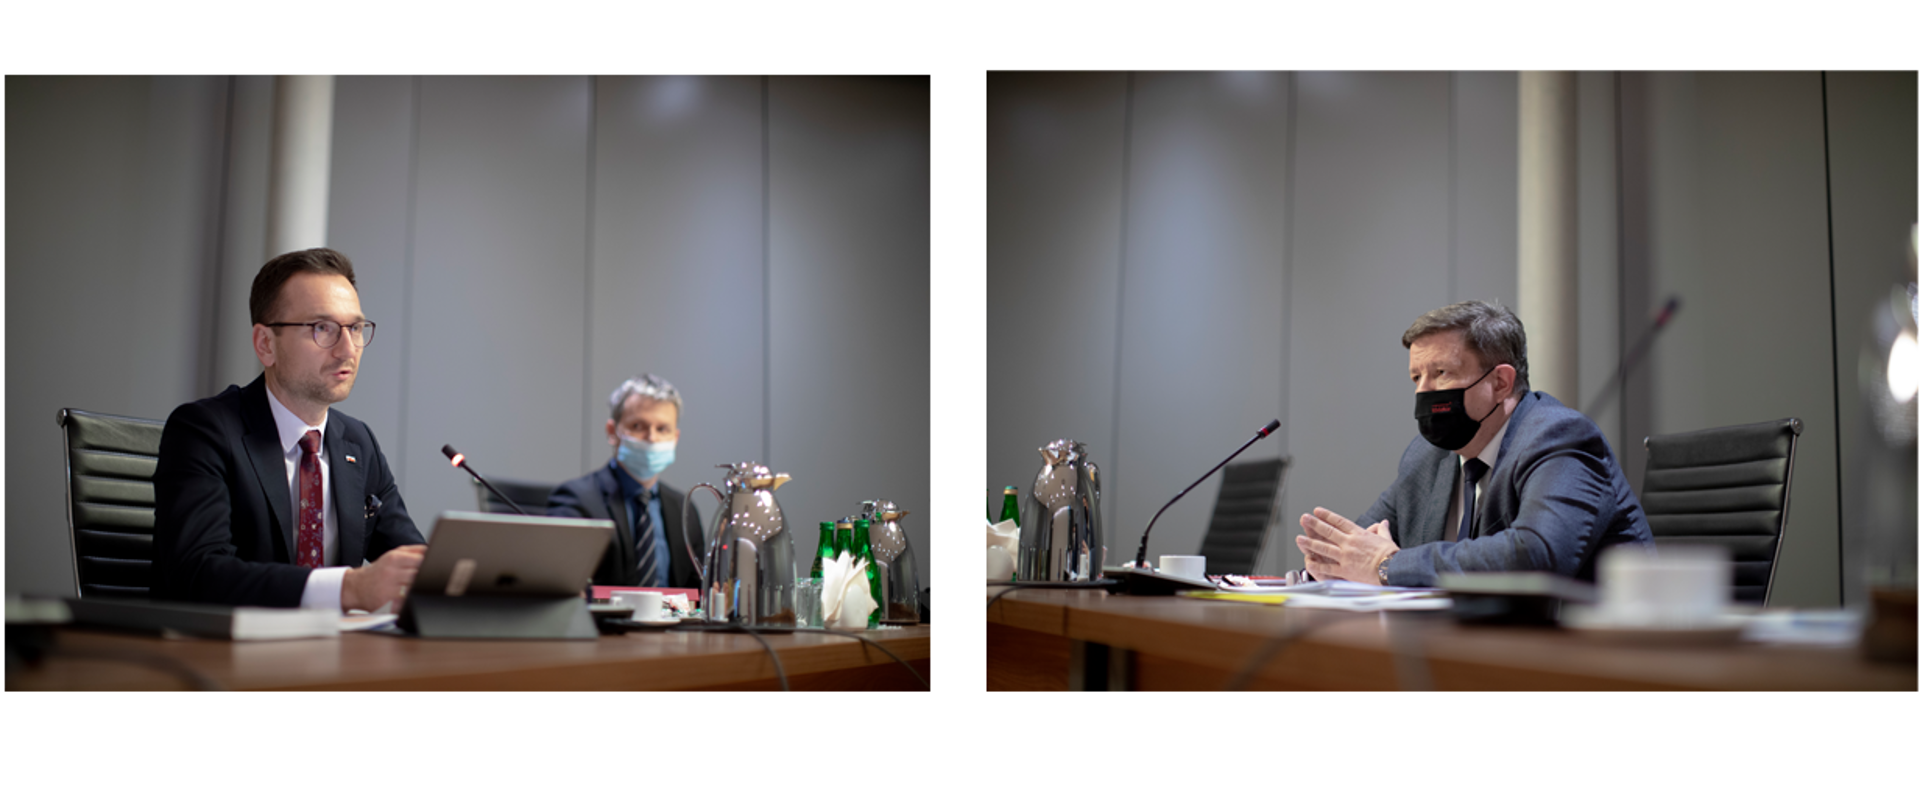 Dwa zdjęcia. Na pierwszym wiceminister Waldemar Buda przy stole z laptopem. Na drugim marszałek województwa łódzkiego Grzegorz Schreiber siedzi z drugiej strony stołu.